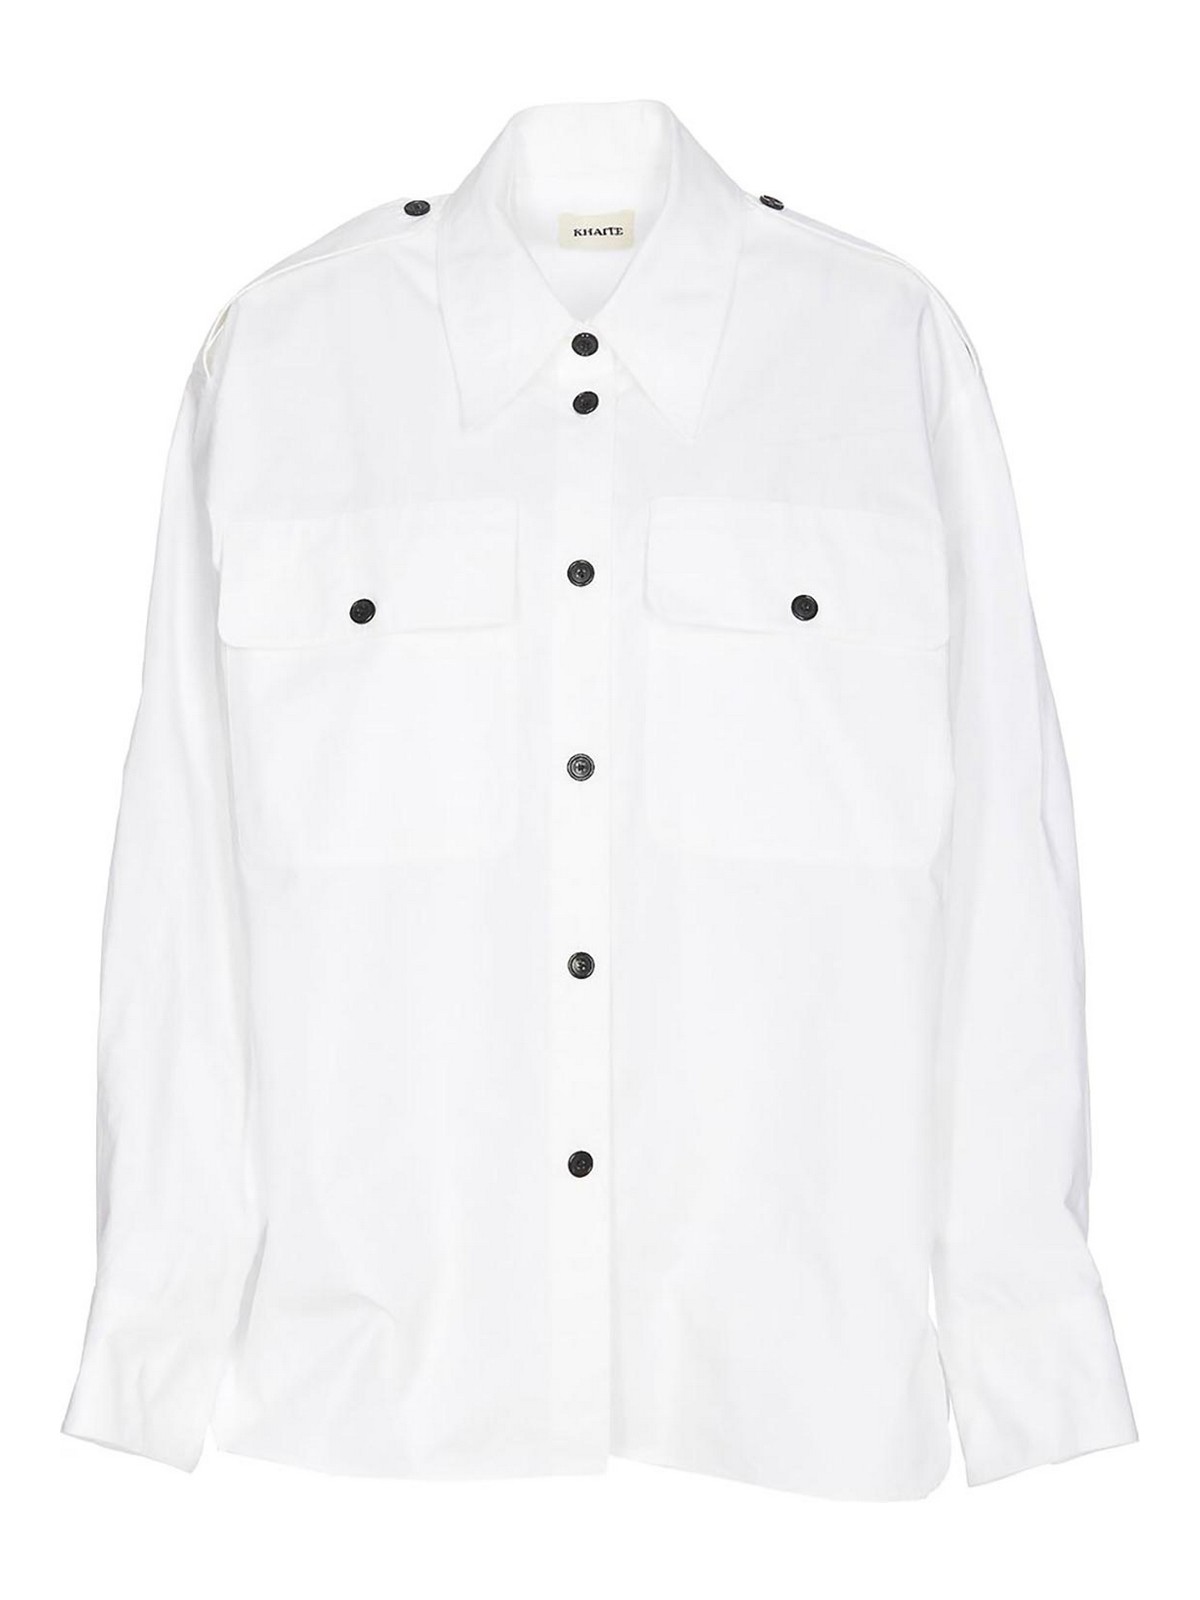 Khaite Missa Shirt White Frontal Button